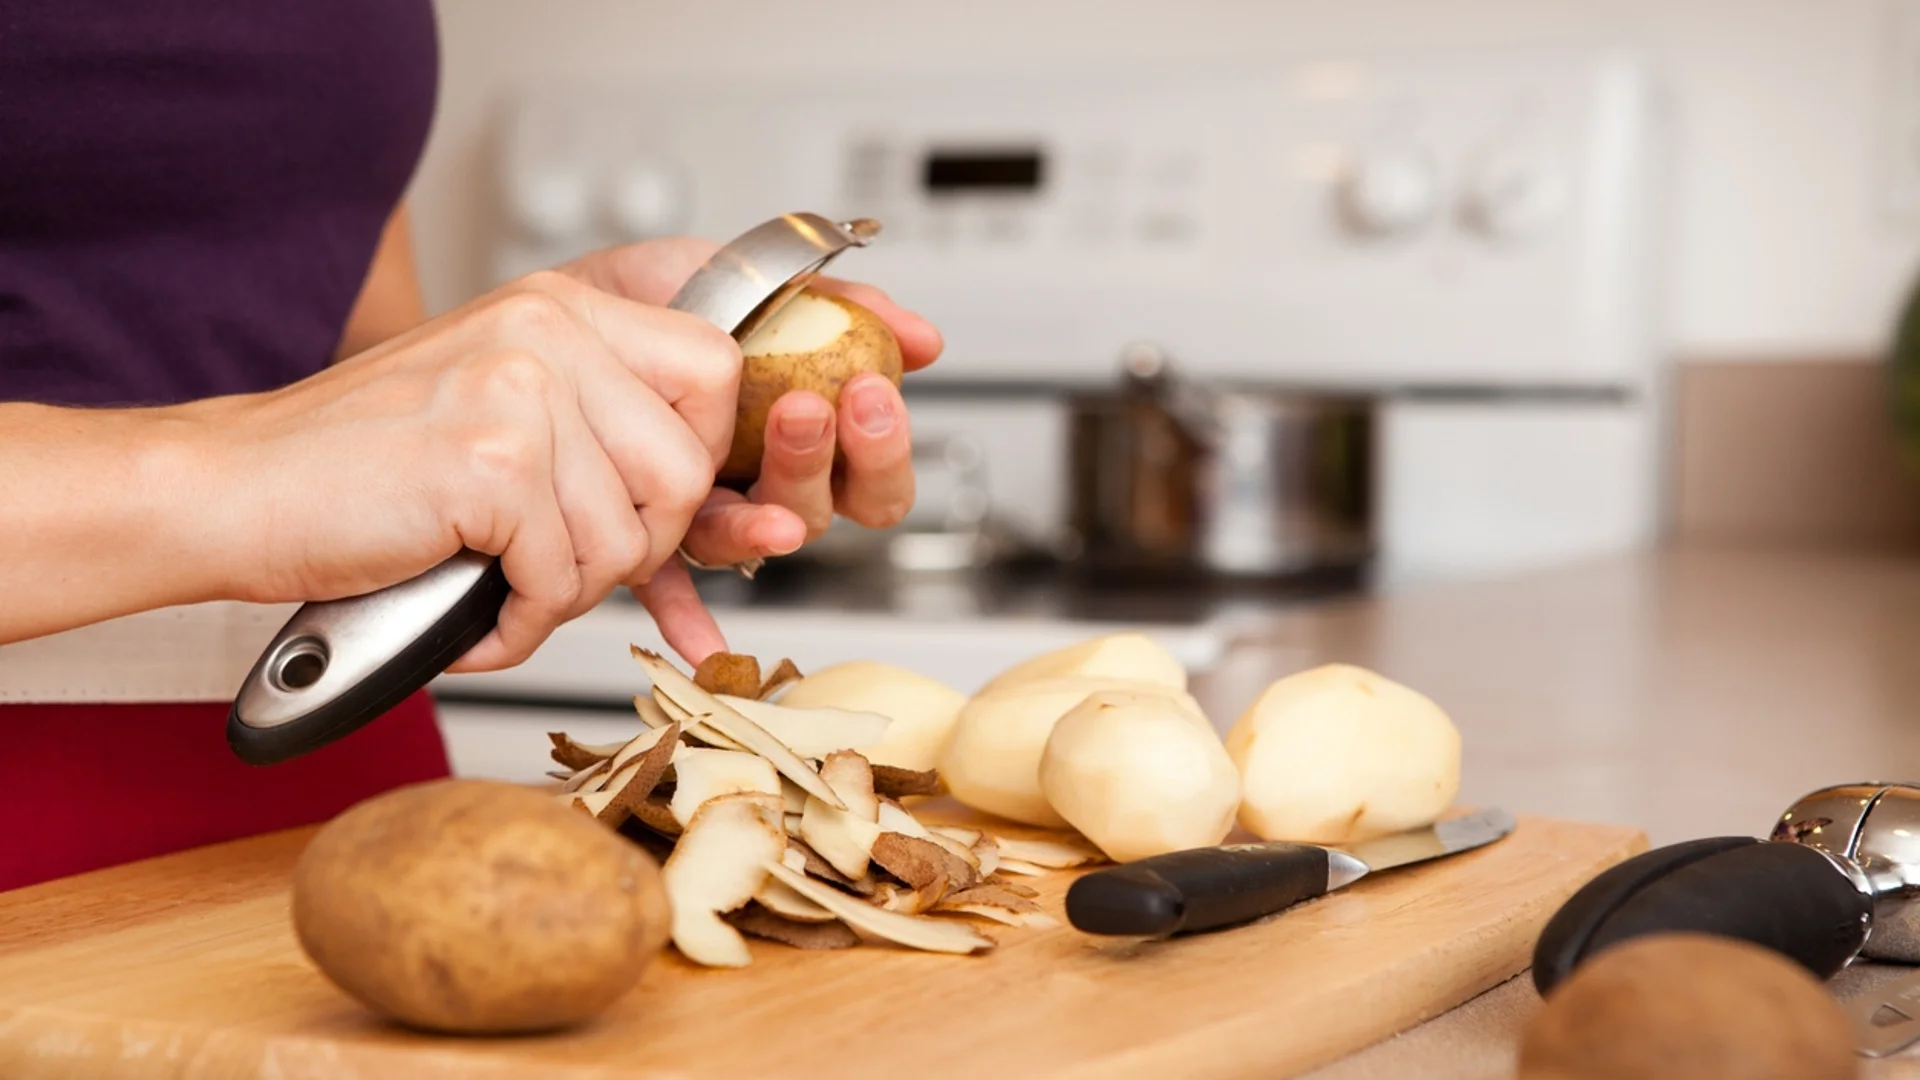 Какво може да се случи със здравето ни, ако премахнем картофите от менюто си?